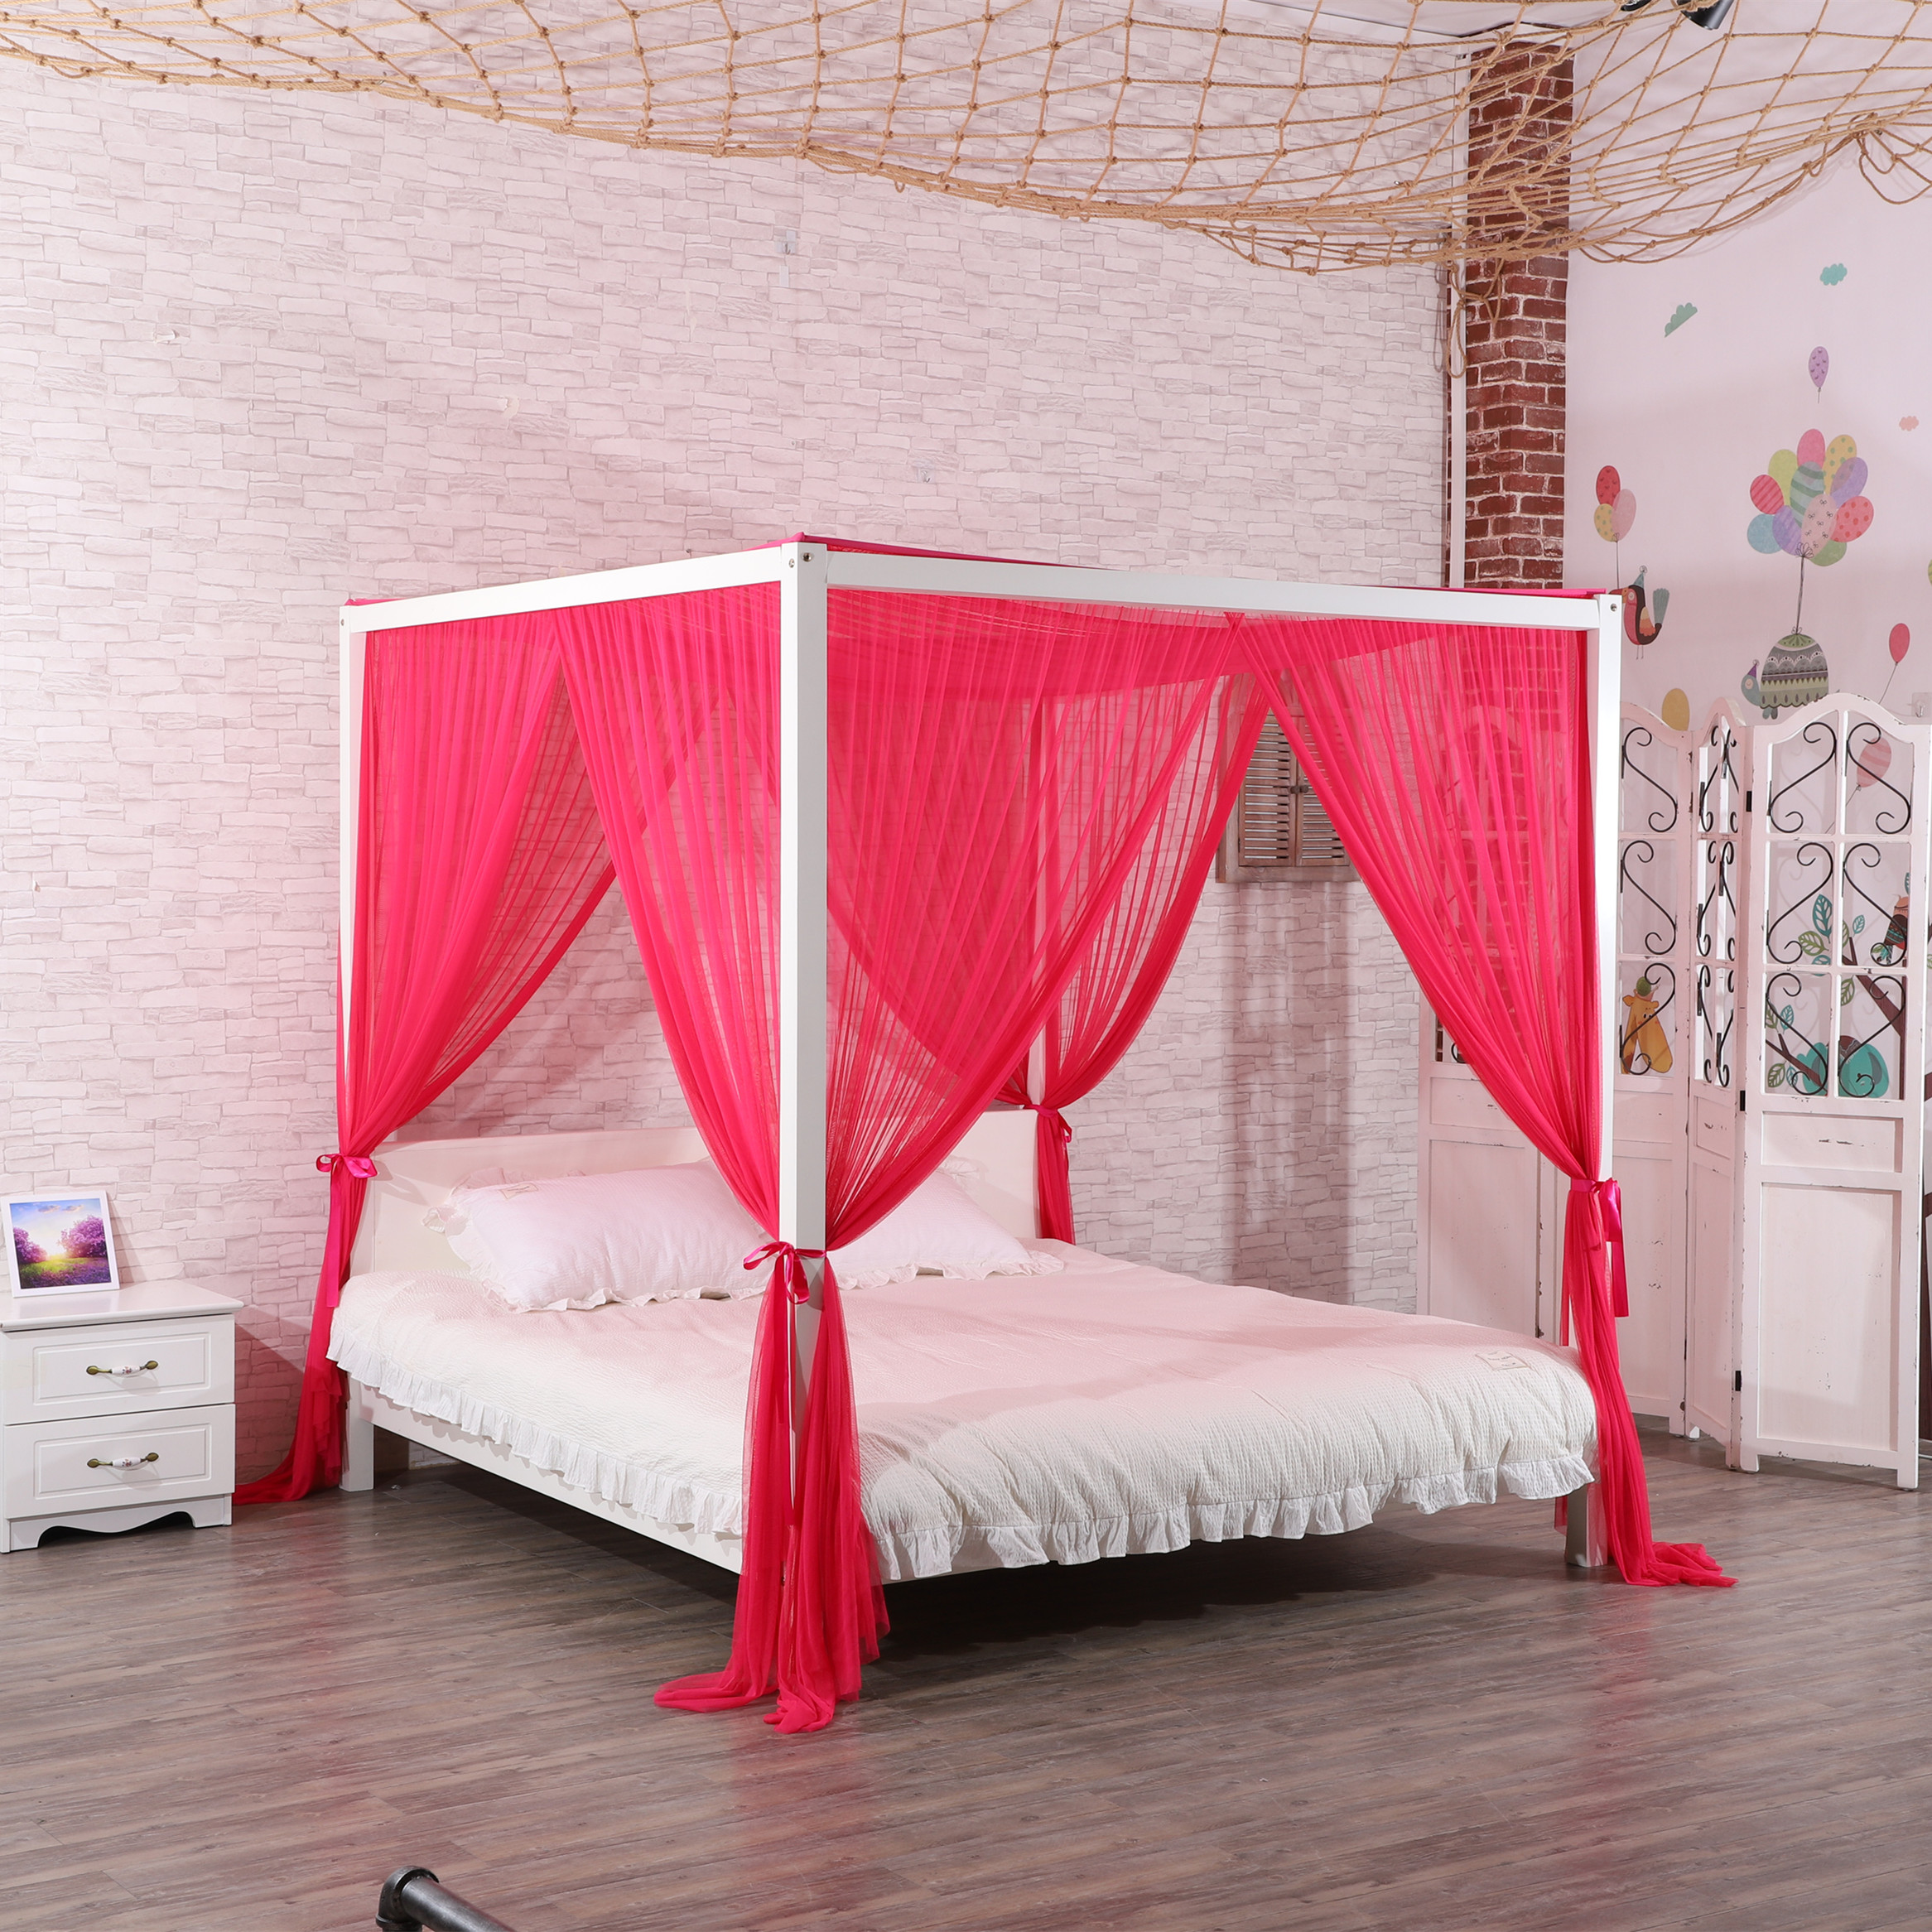 2020 New Style 100% Polyester Hochwertige rechteckige Form Home Decoration Doppelbett Netz King Size Moskitonetz für Bett